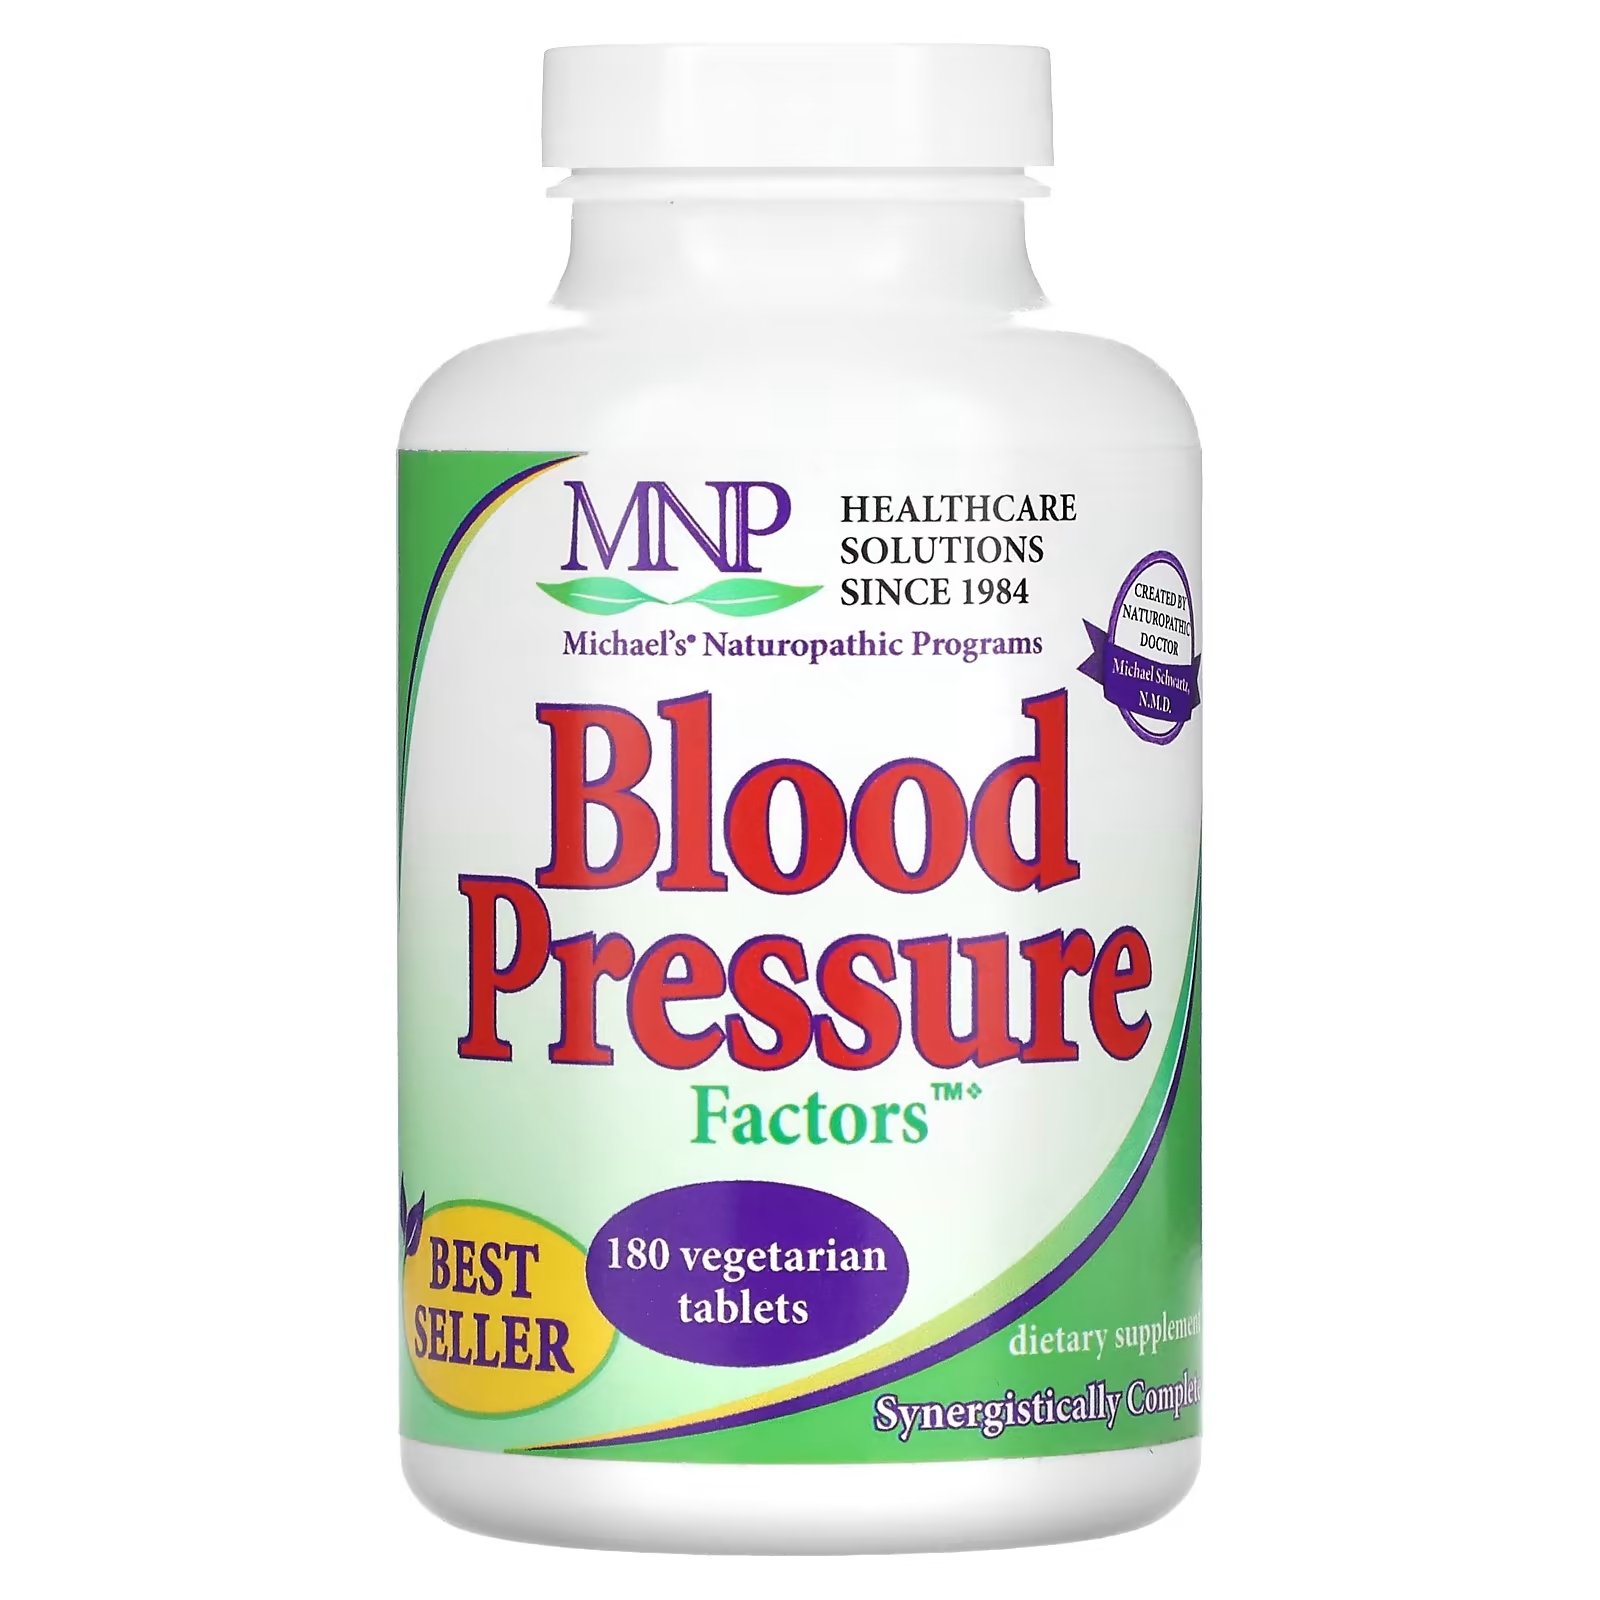 Michael's Naturopathic факторы кровяного давления, 180 вегетарианских таблеток